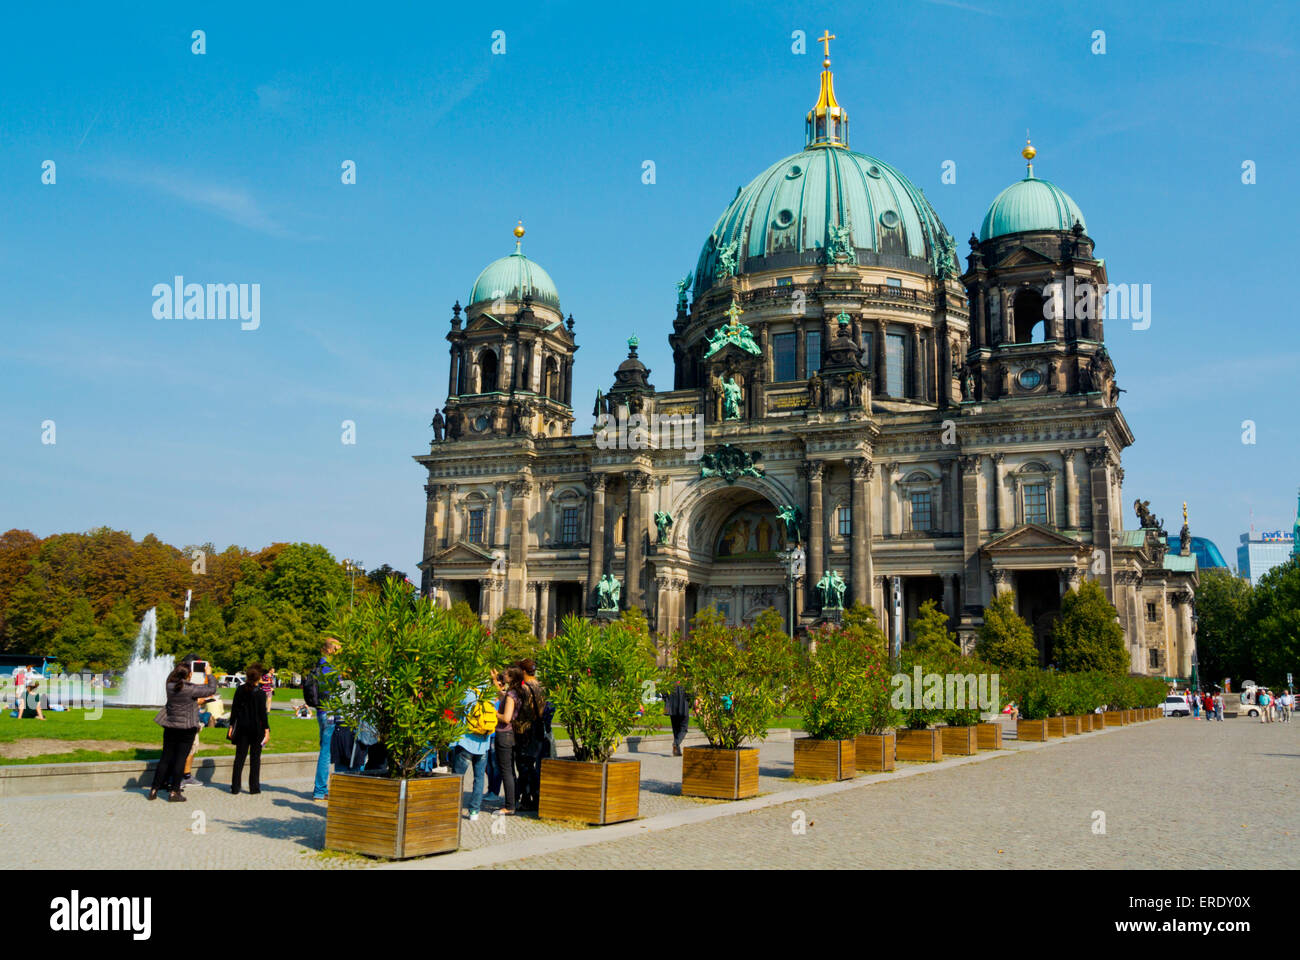 Berliner Dom, la cathédrale de Berlin, Museumsinsel, l'île aux musées, de Mitte, le centre de Berlin, Allemagne Banque D'Images